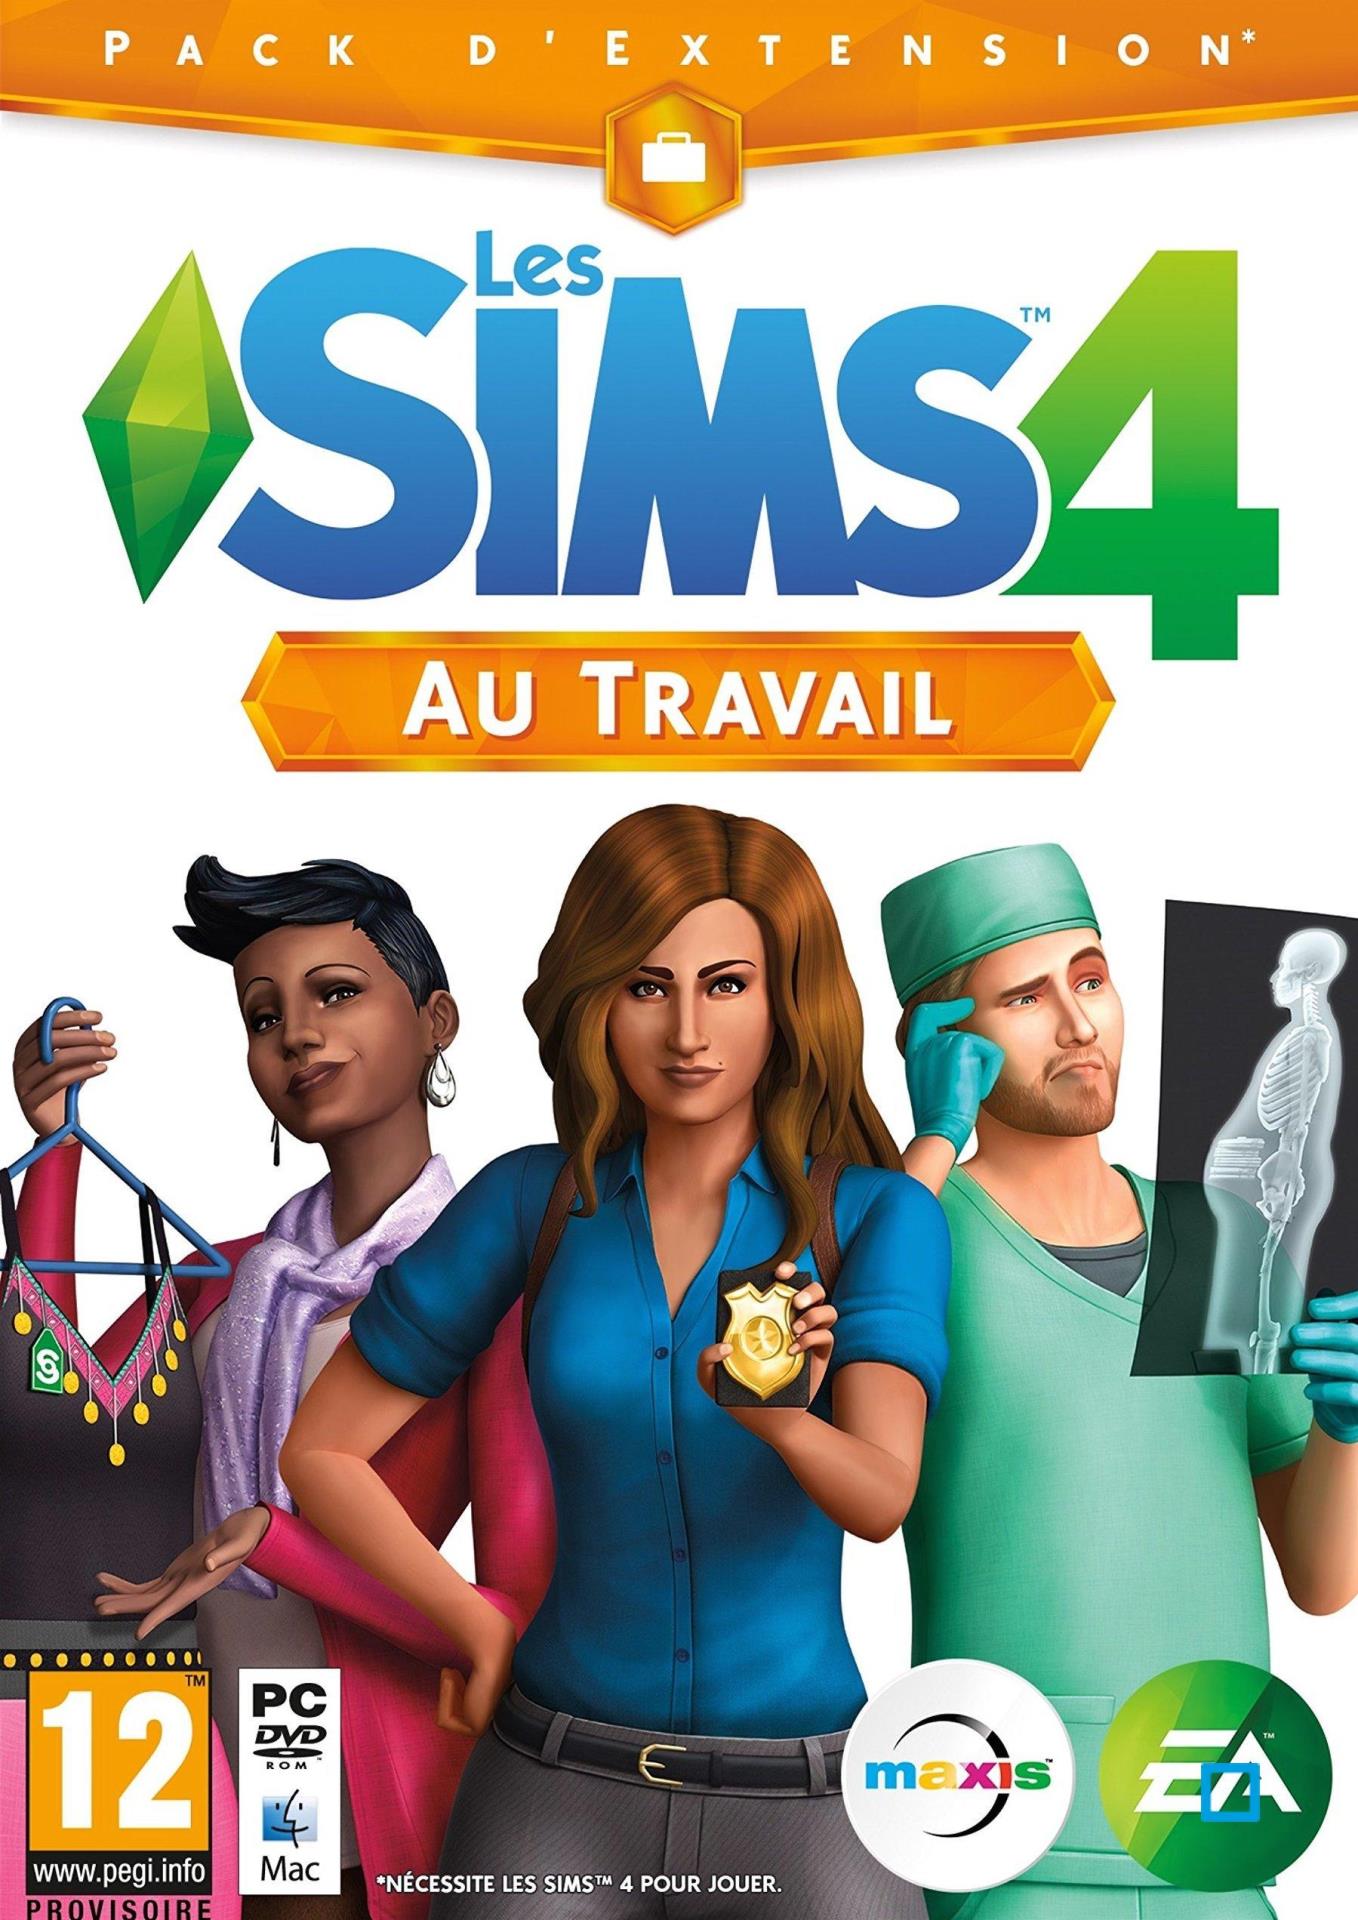 Les Sims 4 : Au Travail Expansion Pack